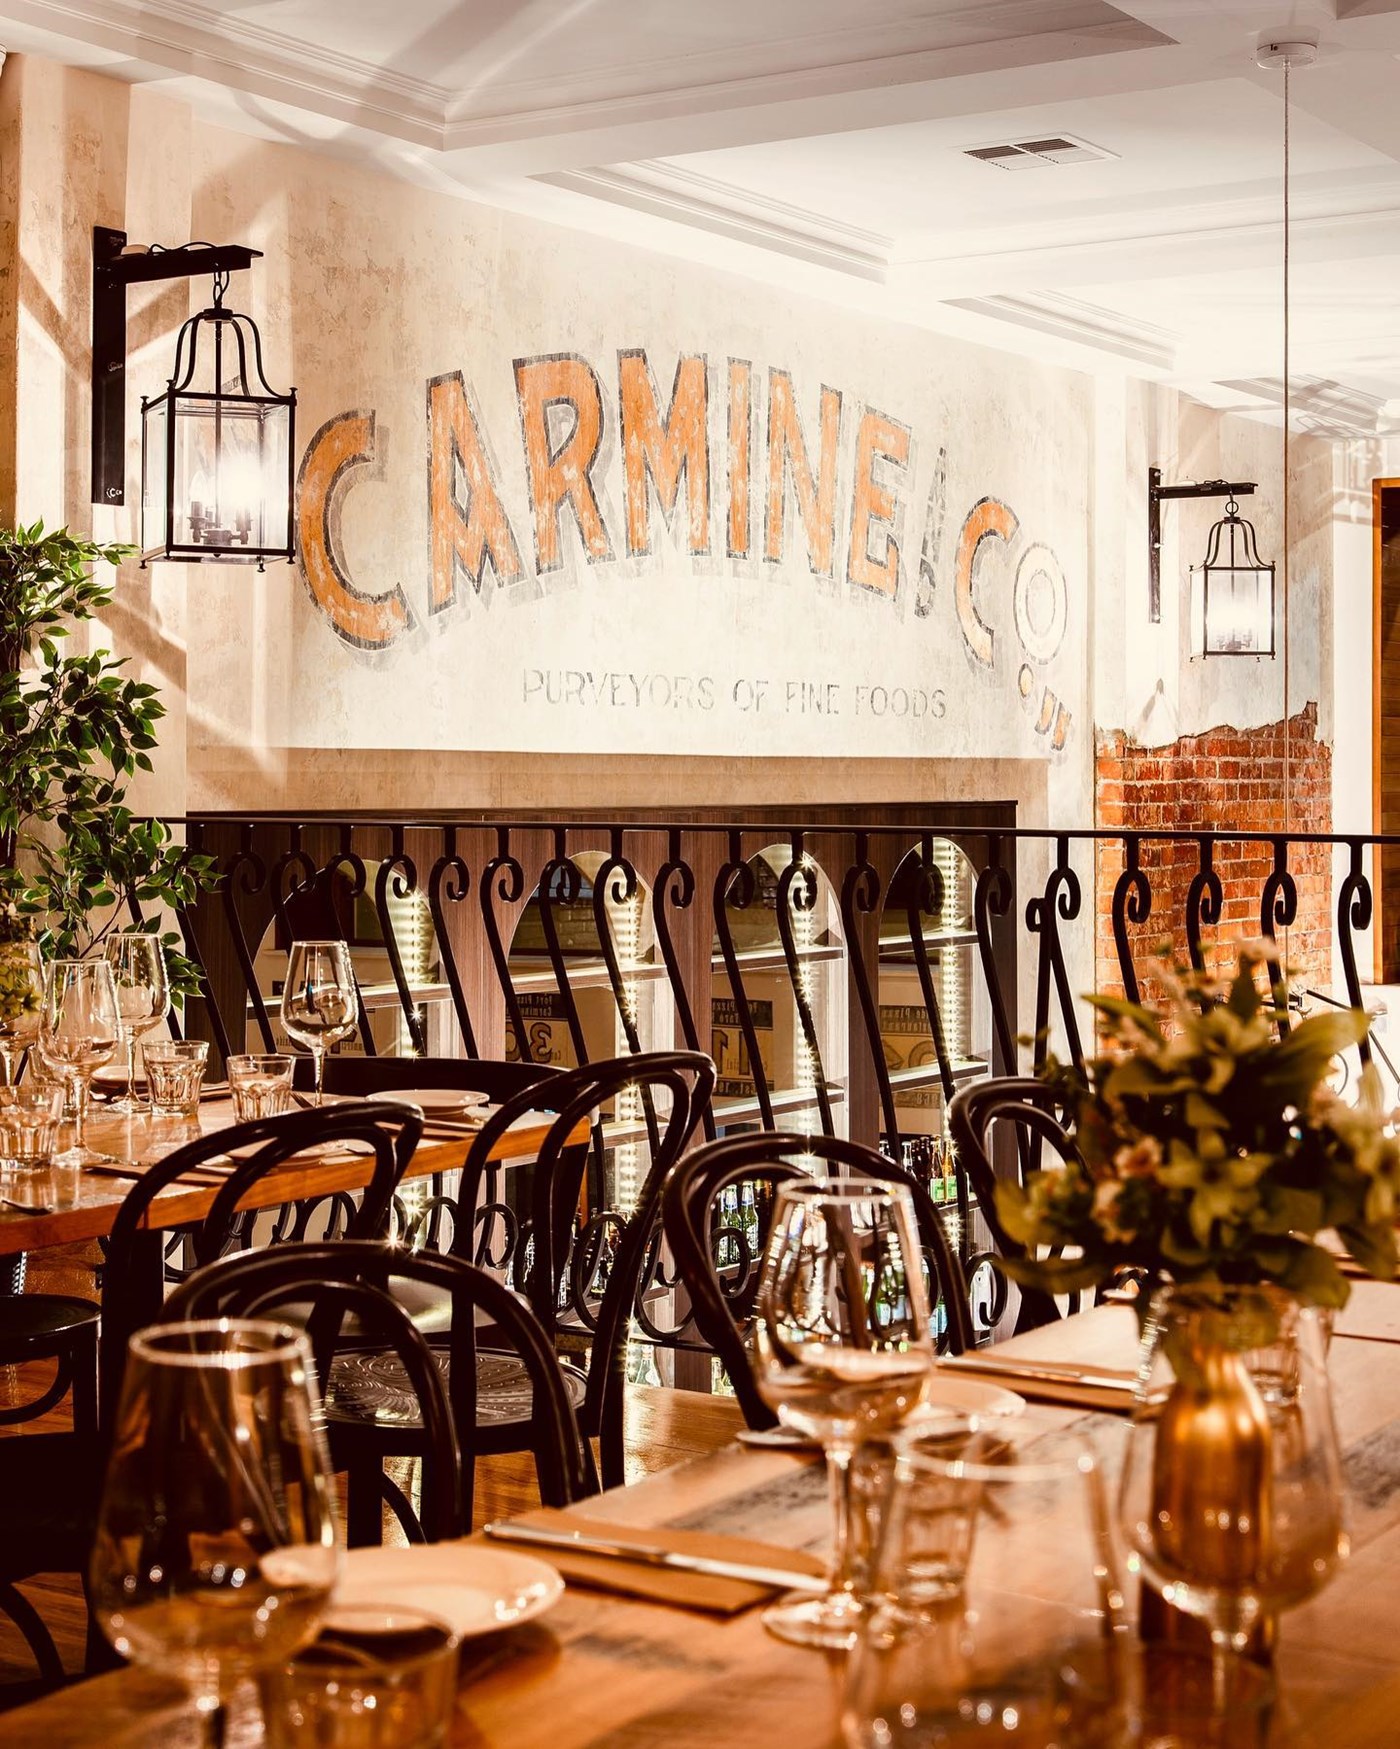 Carmine & Co Restaurant in Adelaide